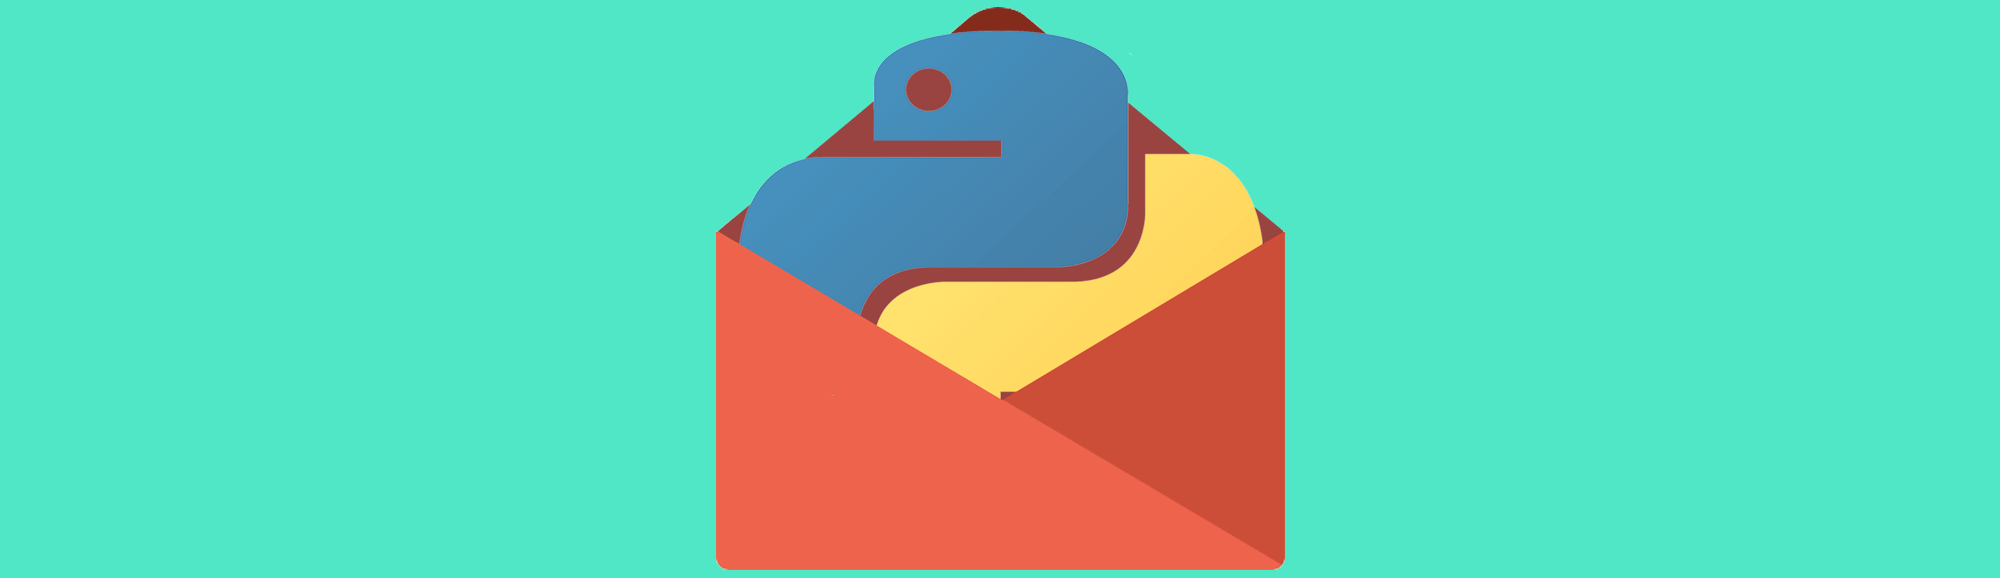 Send Email Python using SMTP